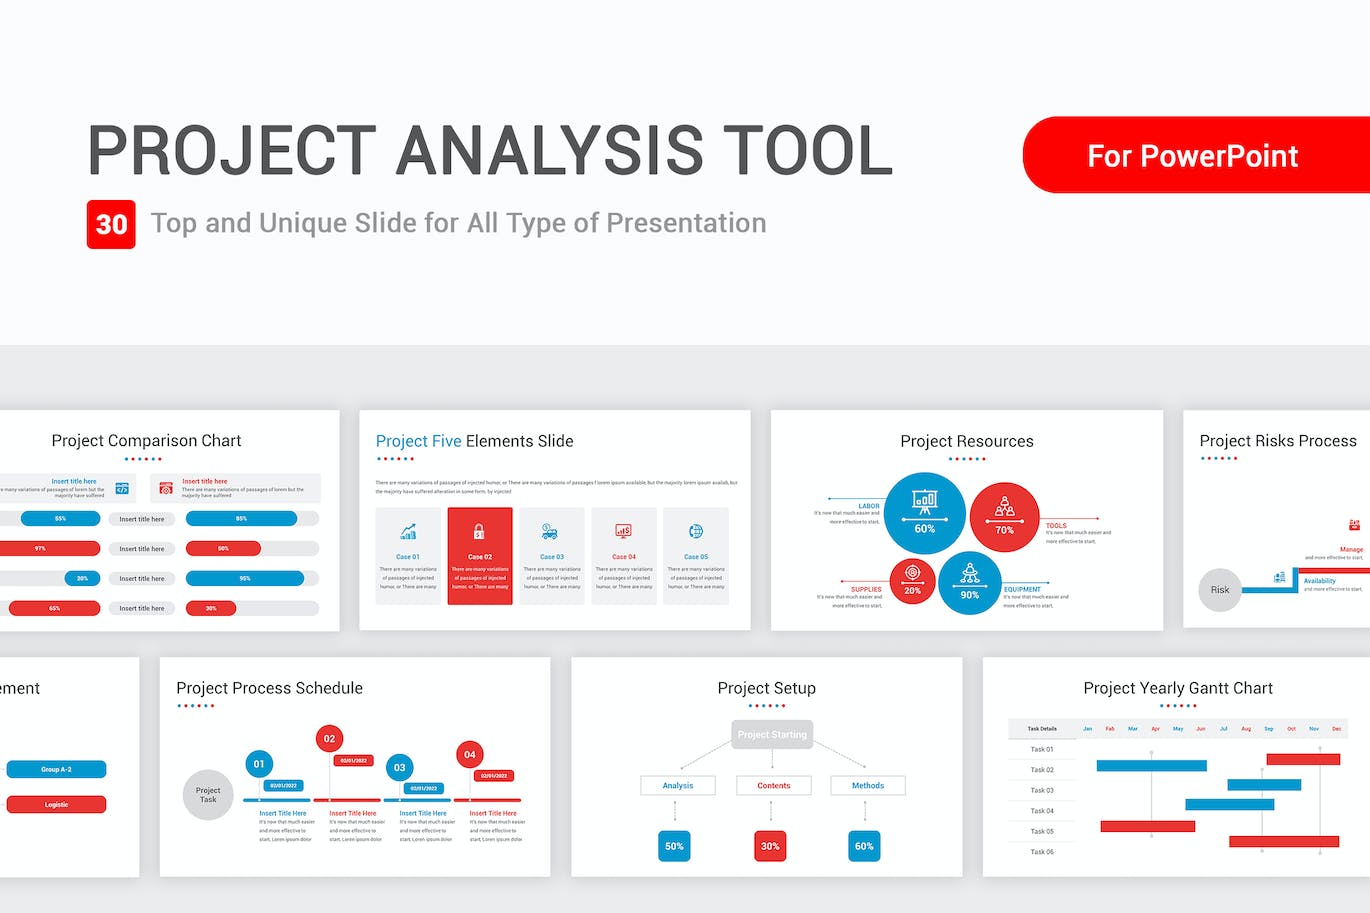 项目分析工具PPT设计模板 Project Analysis Tool Template PowerPoint Template 幻灯图表 第1张